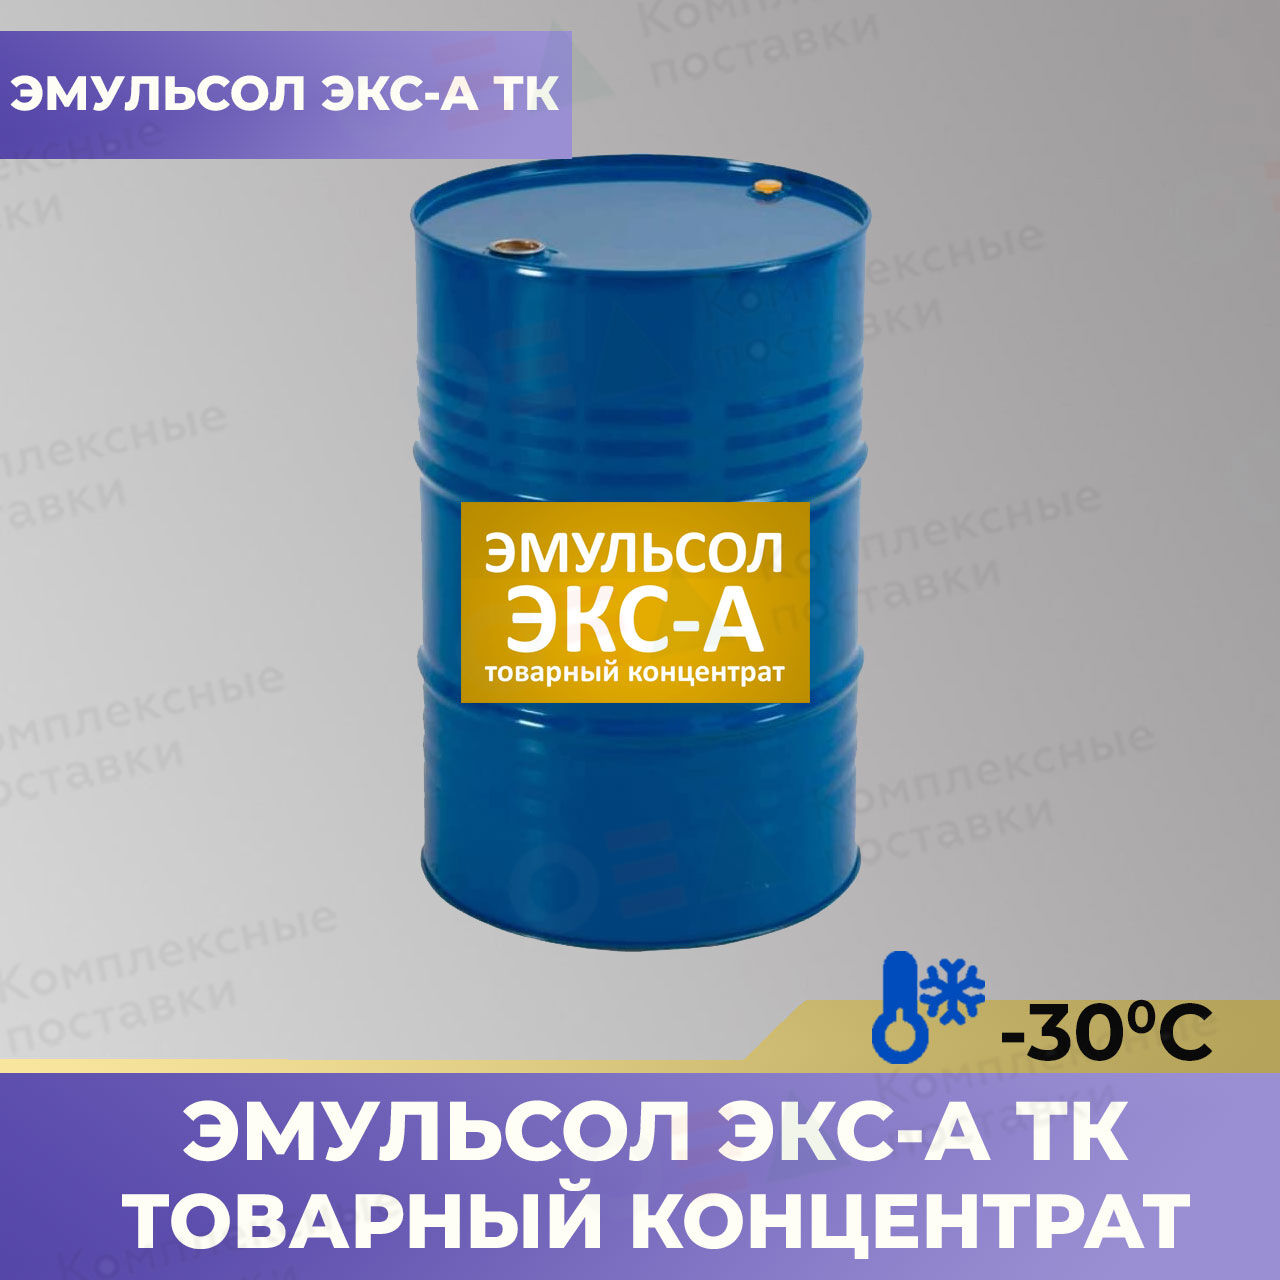 Эмульсол ЭКС-А ТК (товарный концентрат) -30С смазка для опалубки